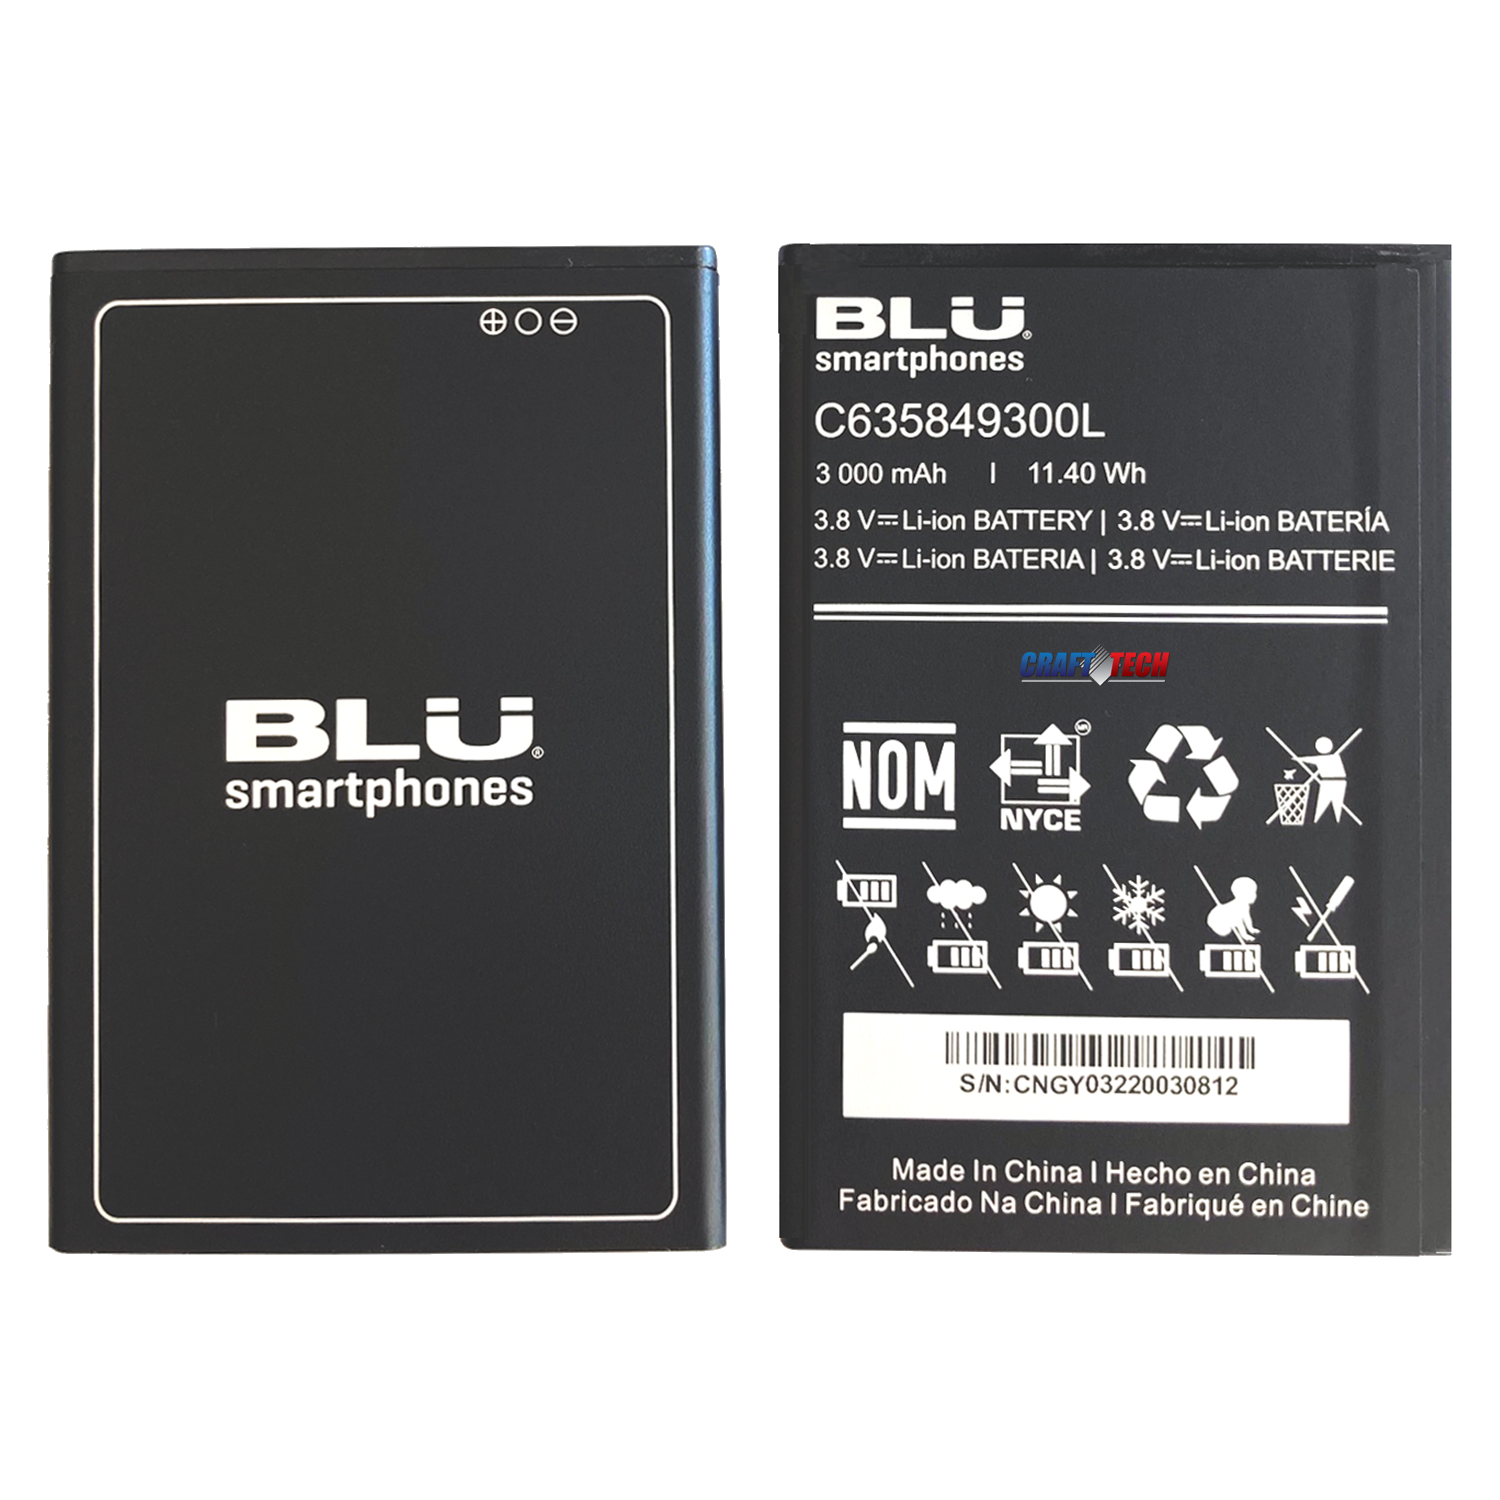 BLU J9L J0090,J0091, J0092ww Original OEM BLU battery C906648300L